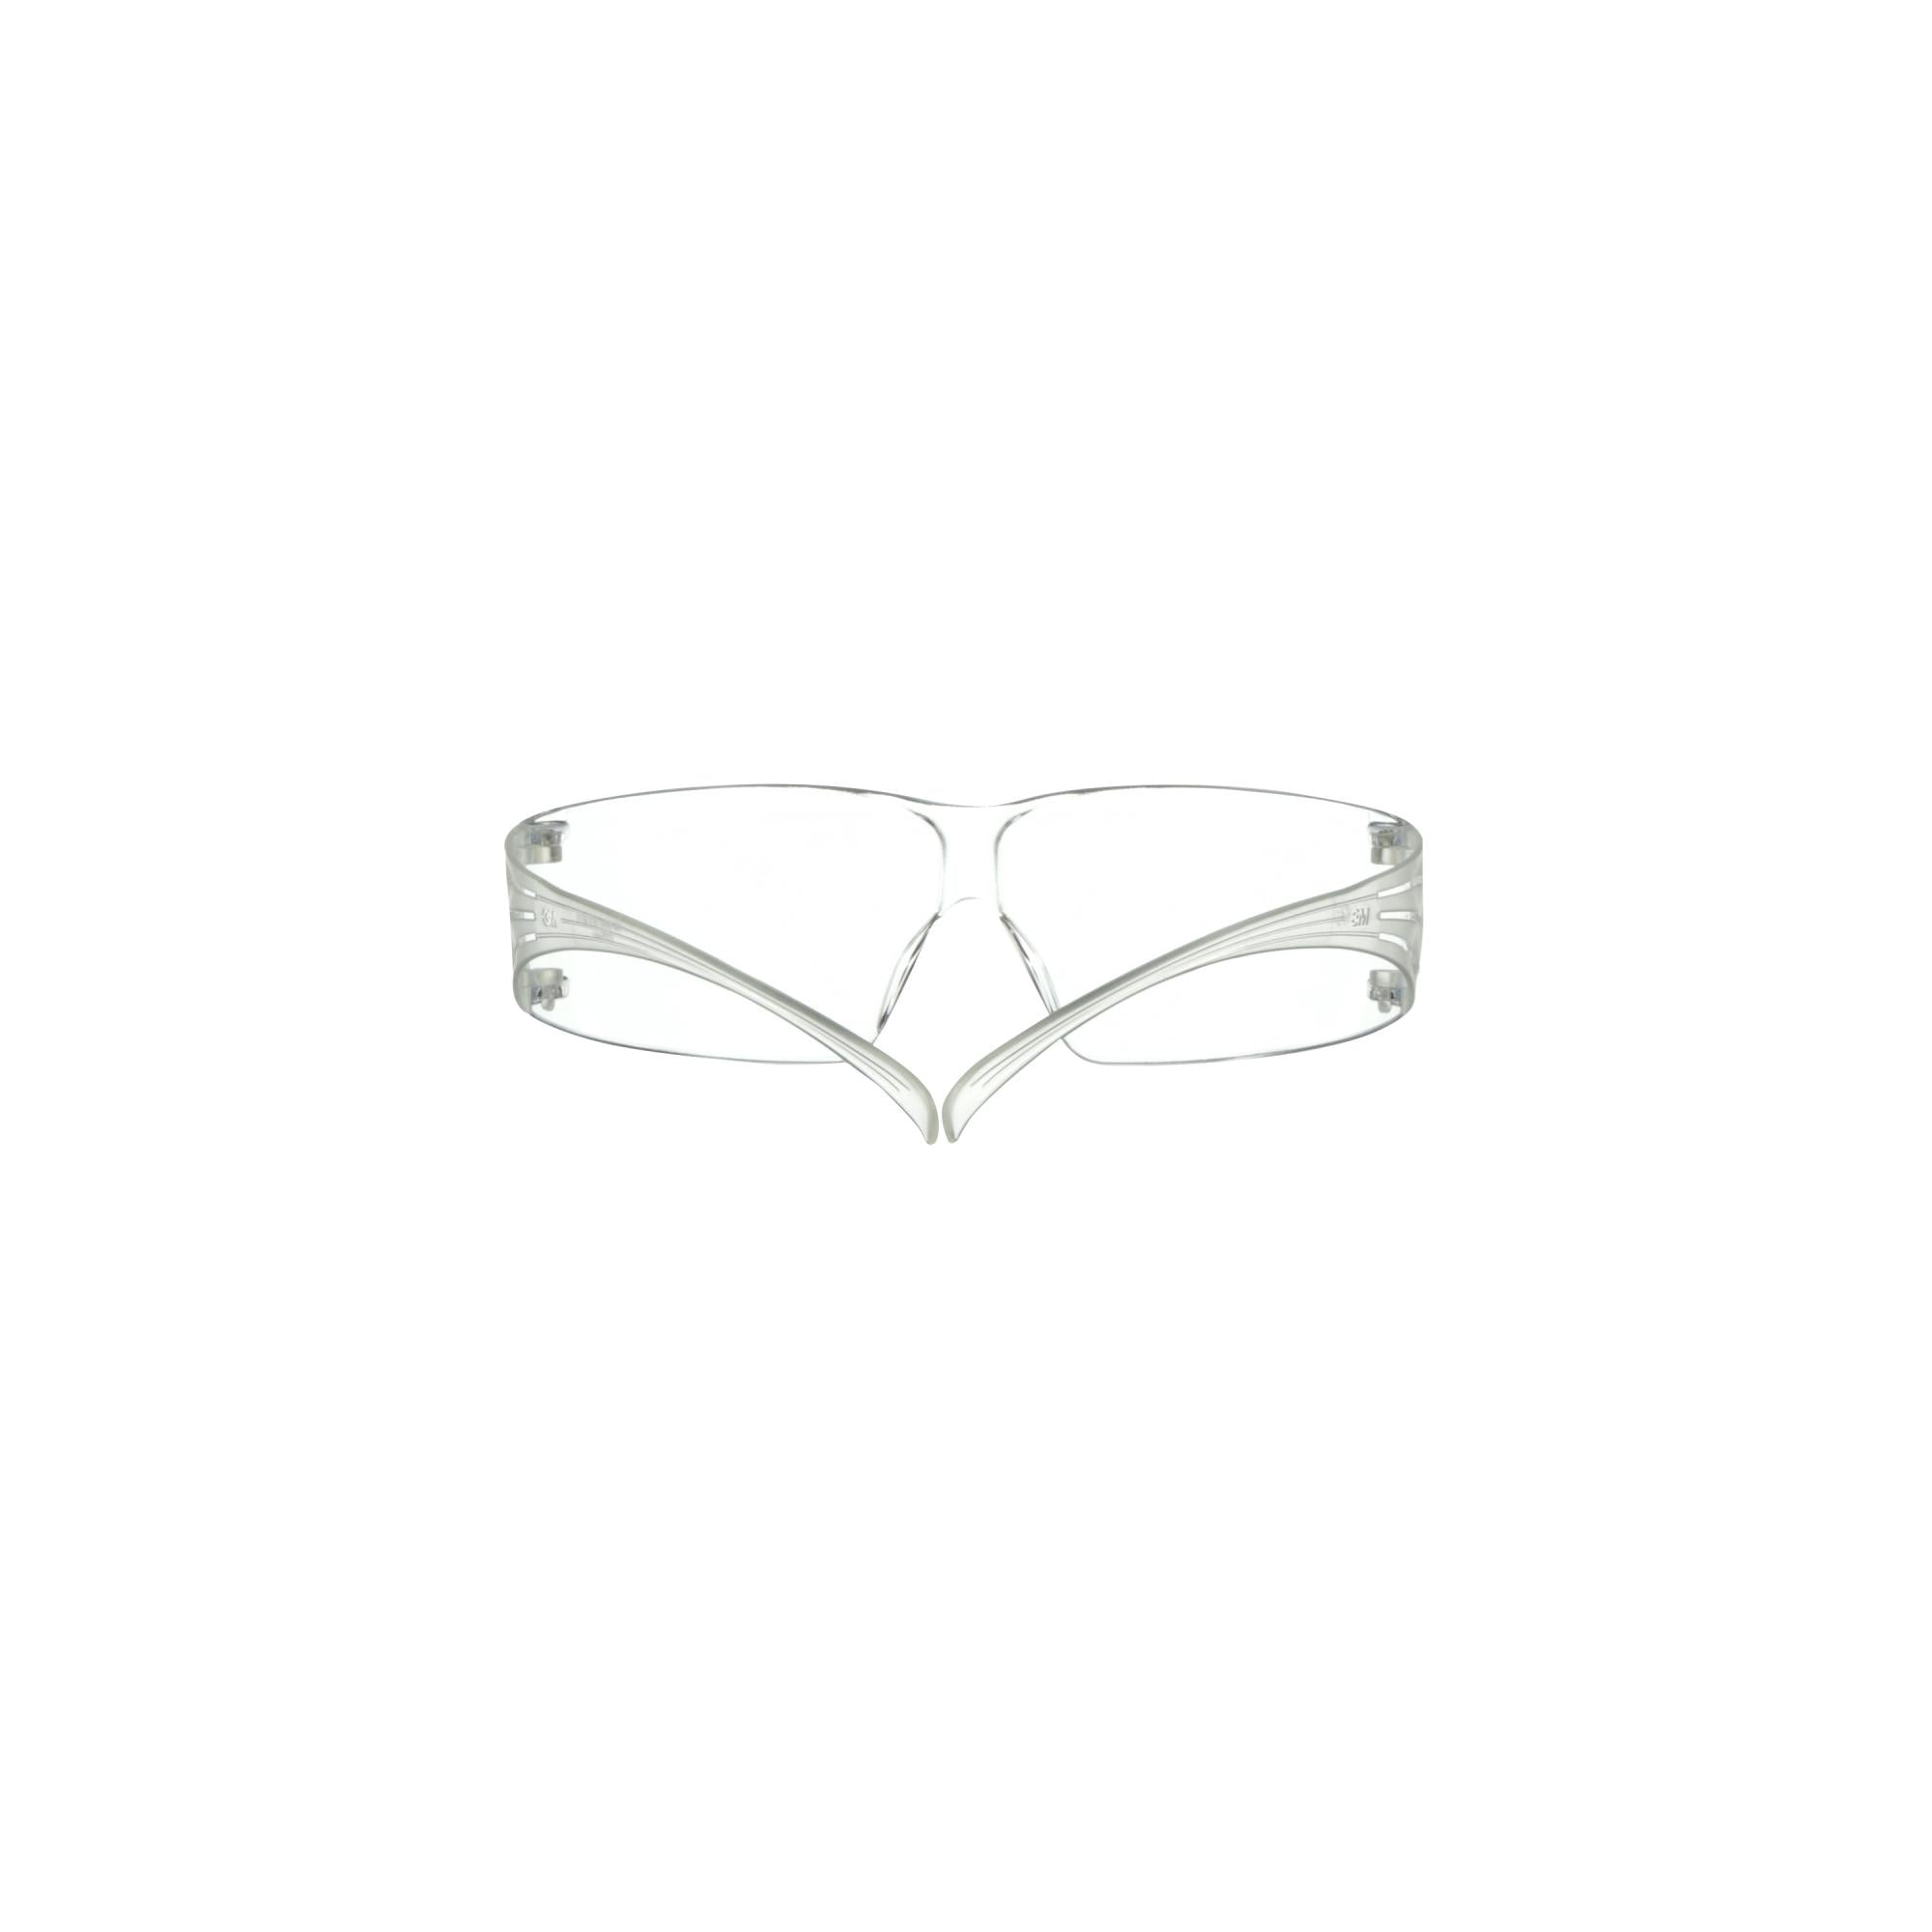 3M SecureFit 200 Eyewear, SF200H1-DC, Clear, Clear Lens, Anti-Fog